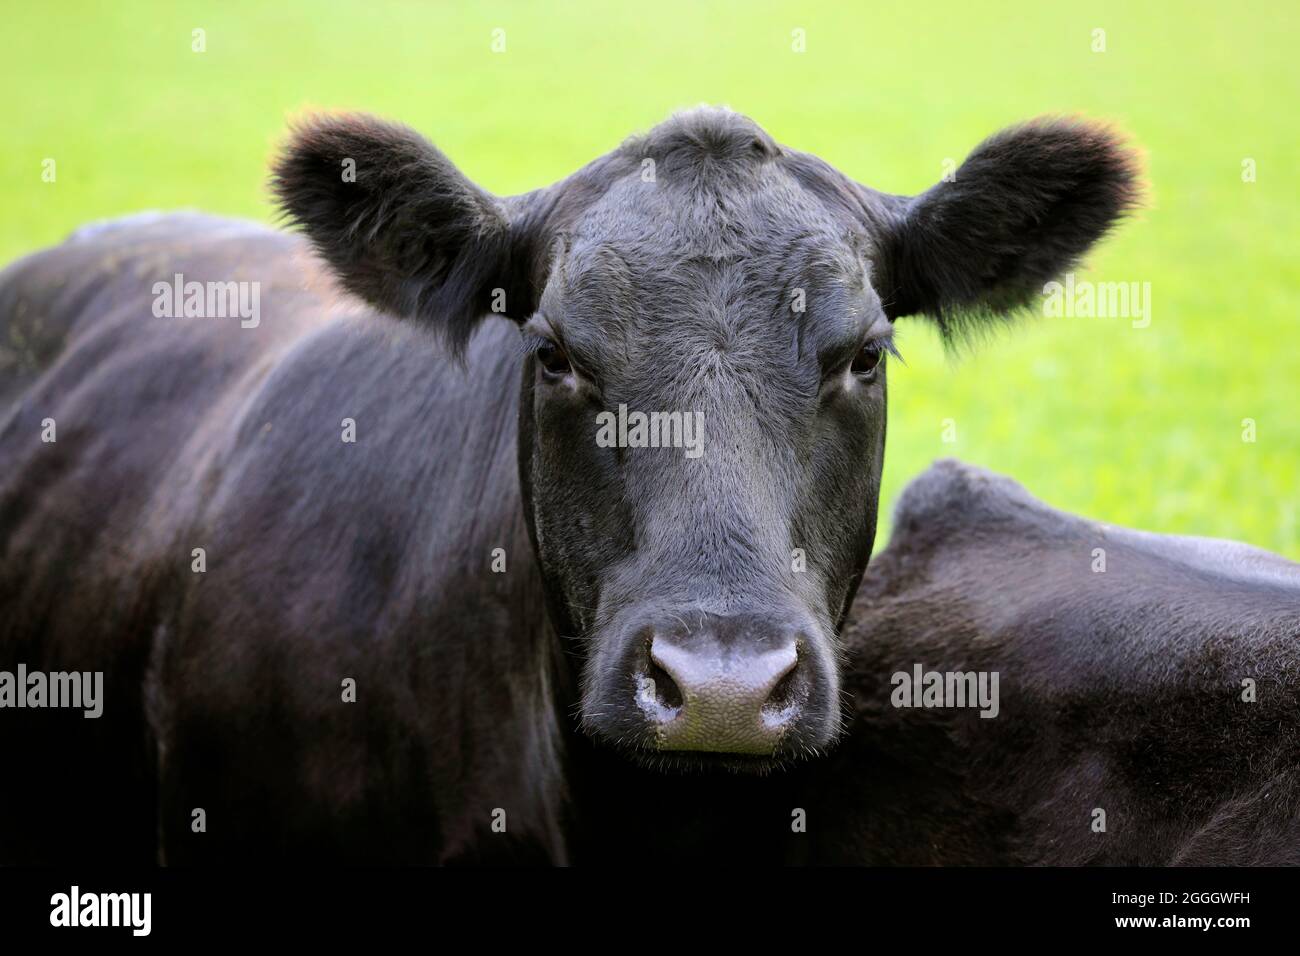 Primo piano di una vacca nera Aberdeen Angus in piedi in campo in Finlandia, le etichette auricolari sono state rimosse nell'editor di immagini. Angus è una razza scozzese di bovini da carne. Foto Stock